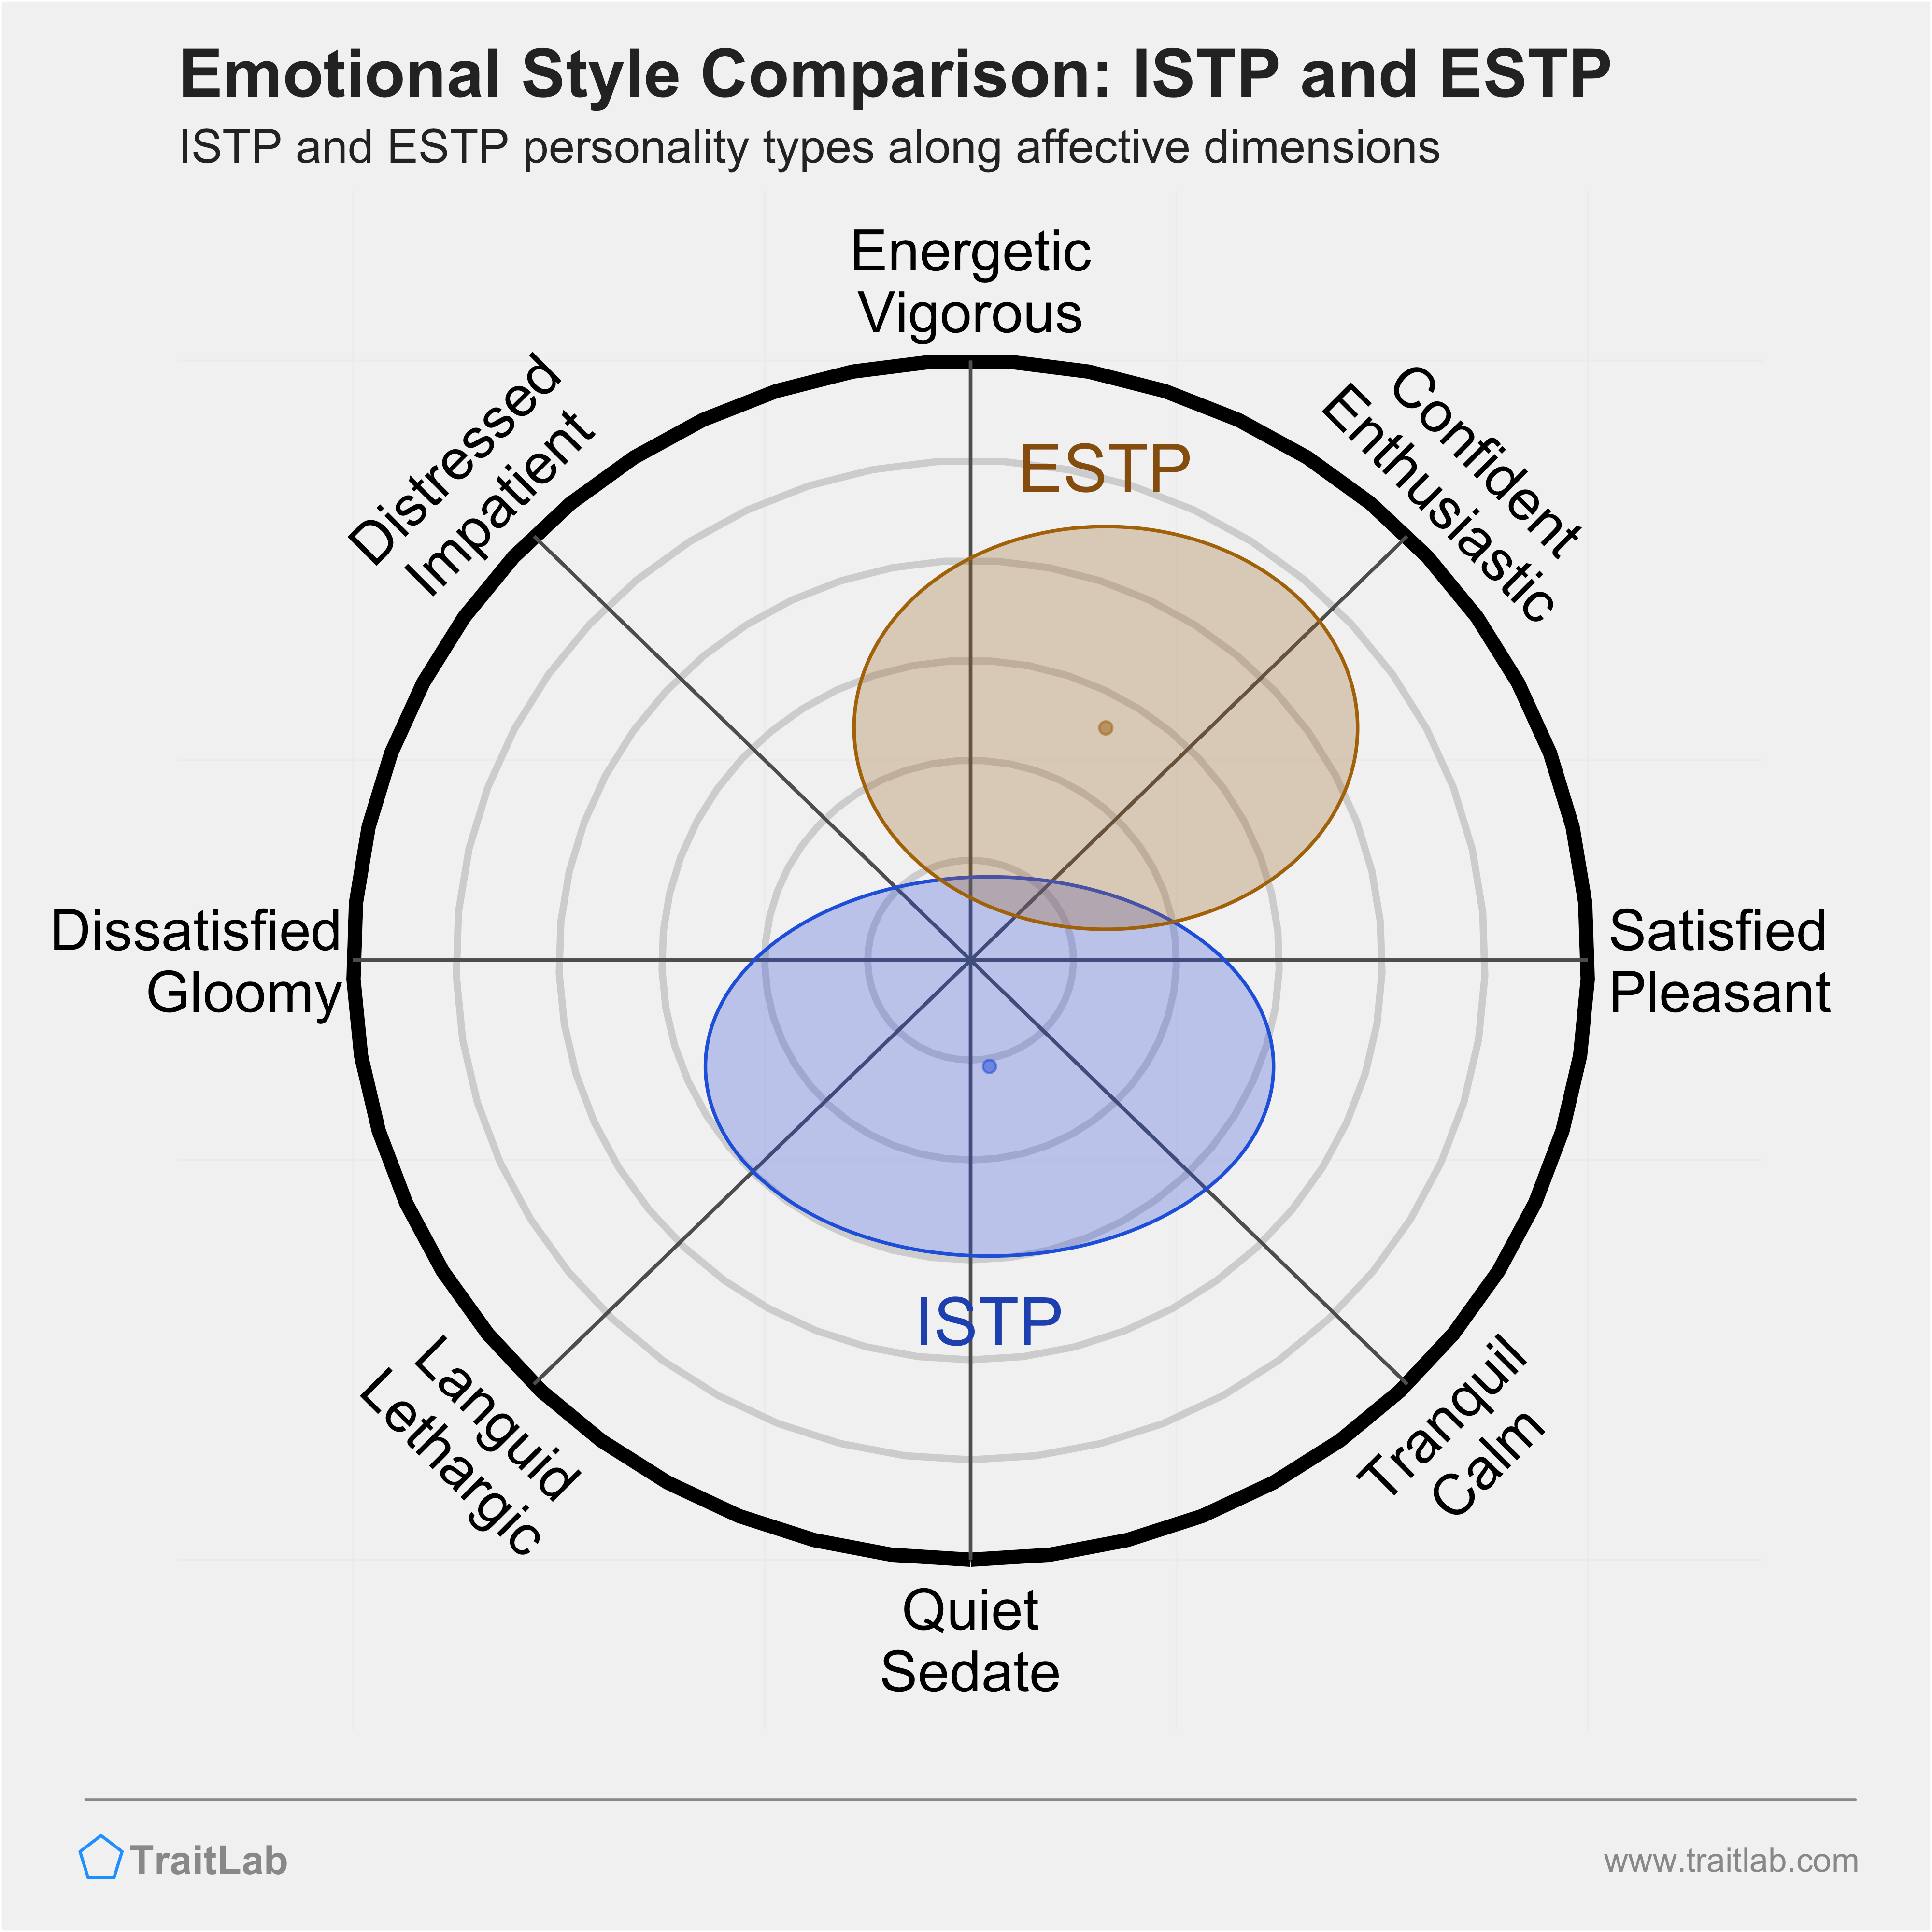 ISTP and ESTP comparison across emotional (affective) dimensions